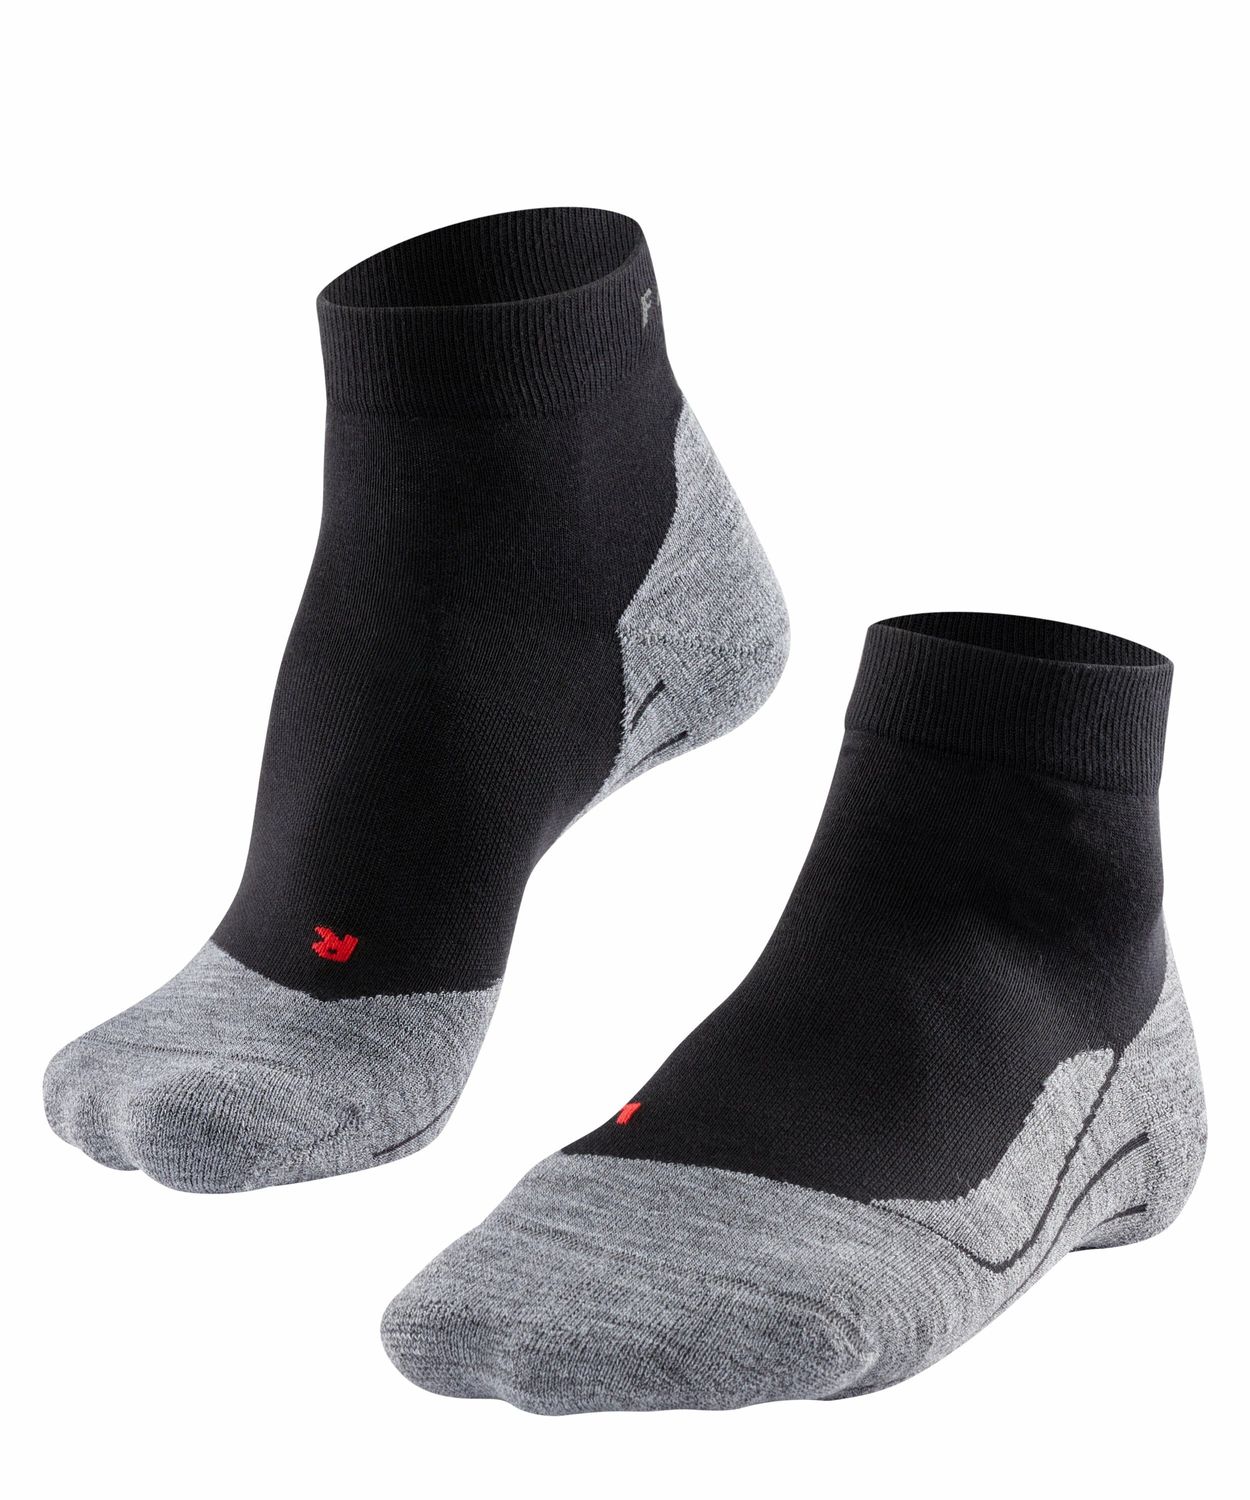 Falke Damen Quarter Sport Socken RU4 Running Hersteller: Falke Bestellnummer:4043876990217